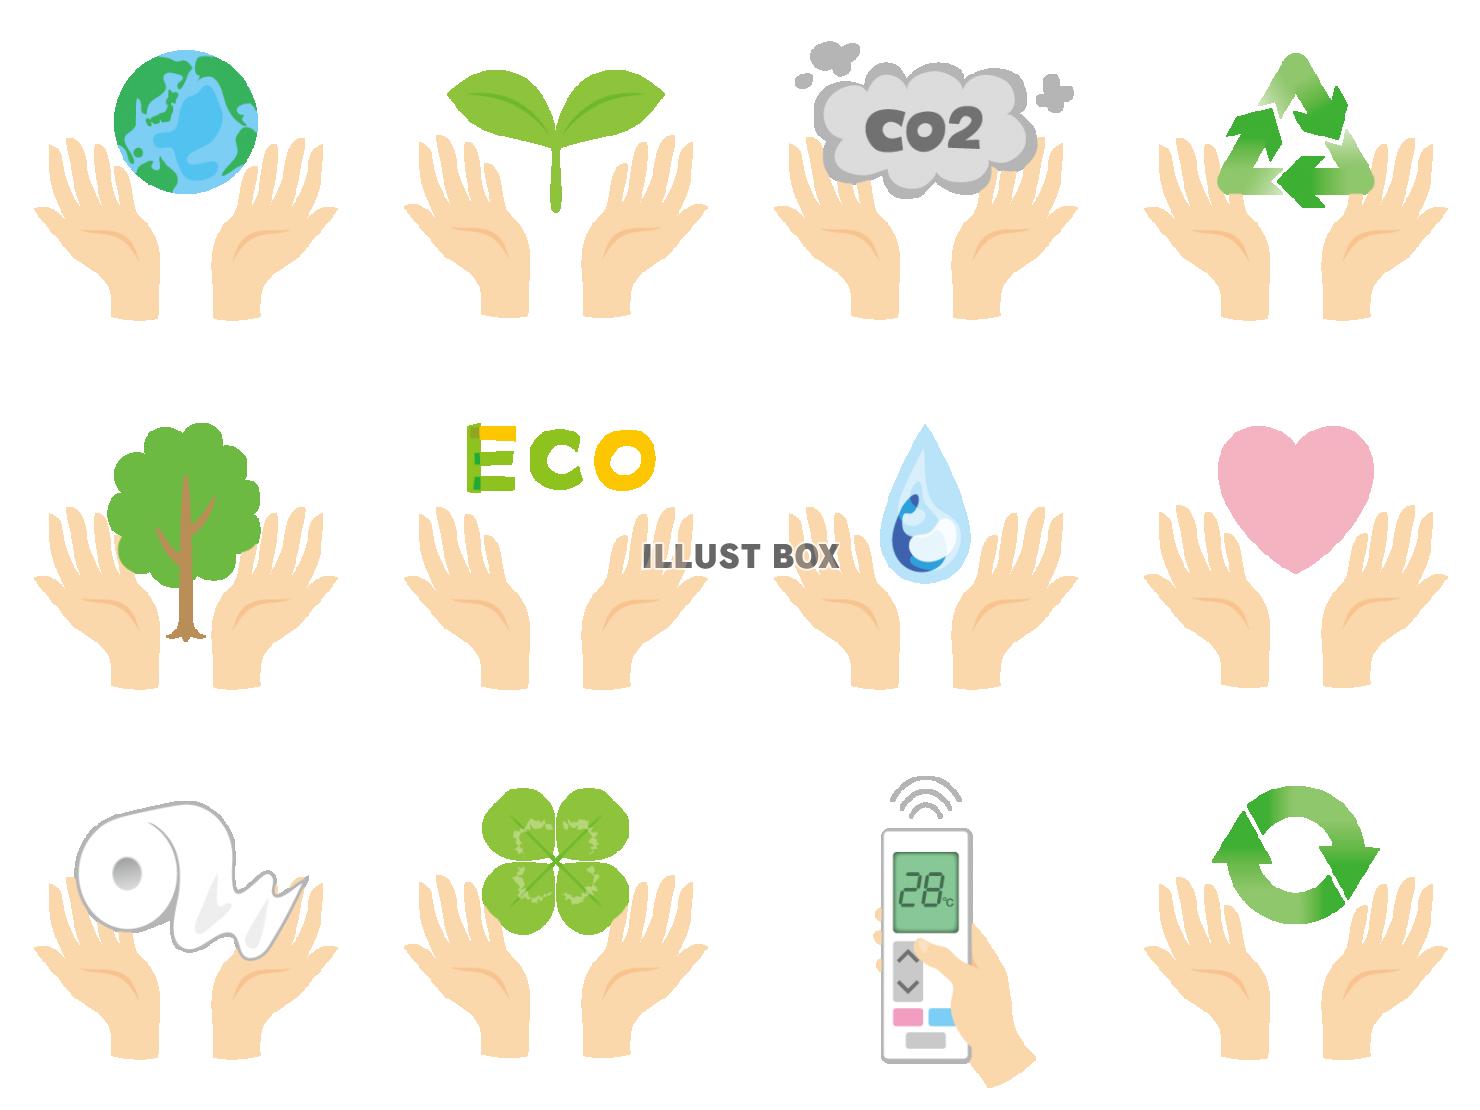 ecoエコマークエコロジー地球温暖化節水節電co2二酸化炭素...